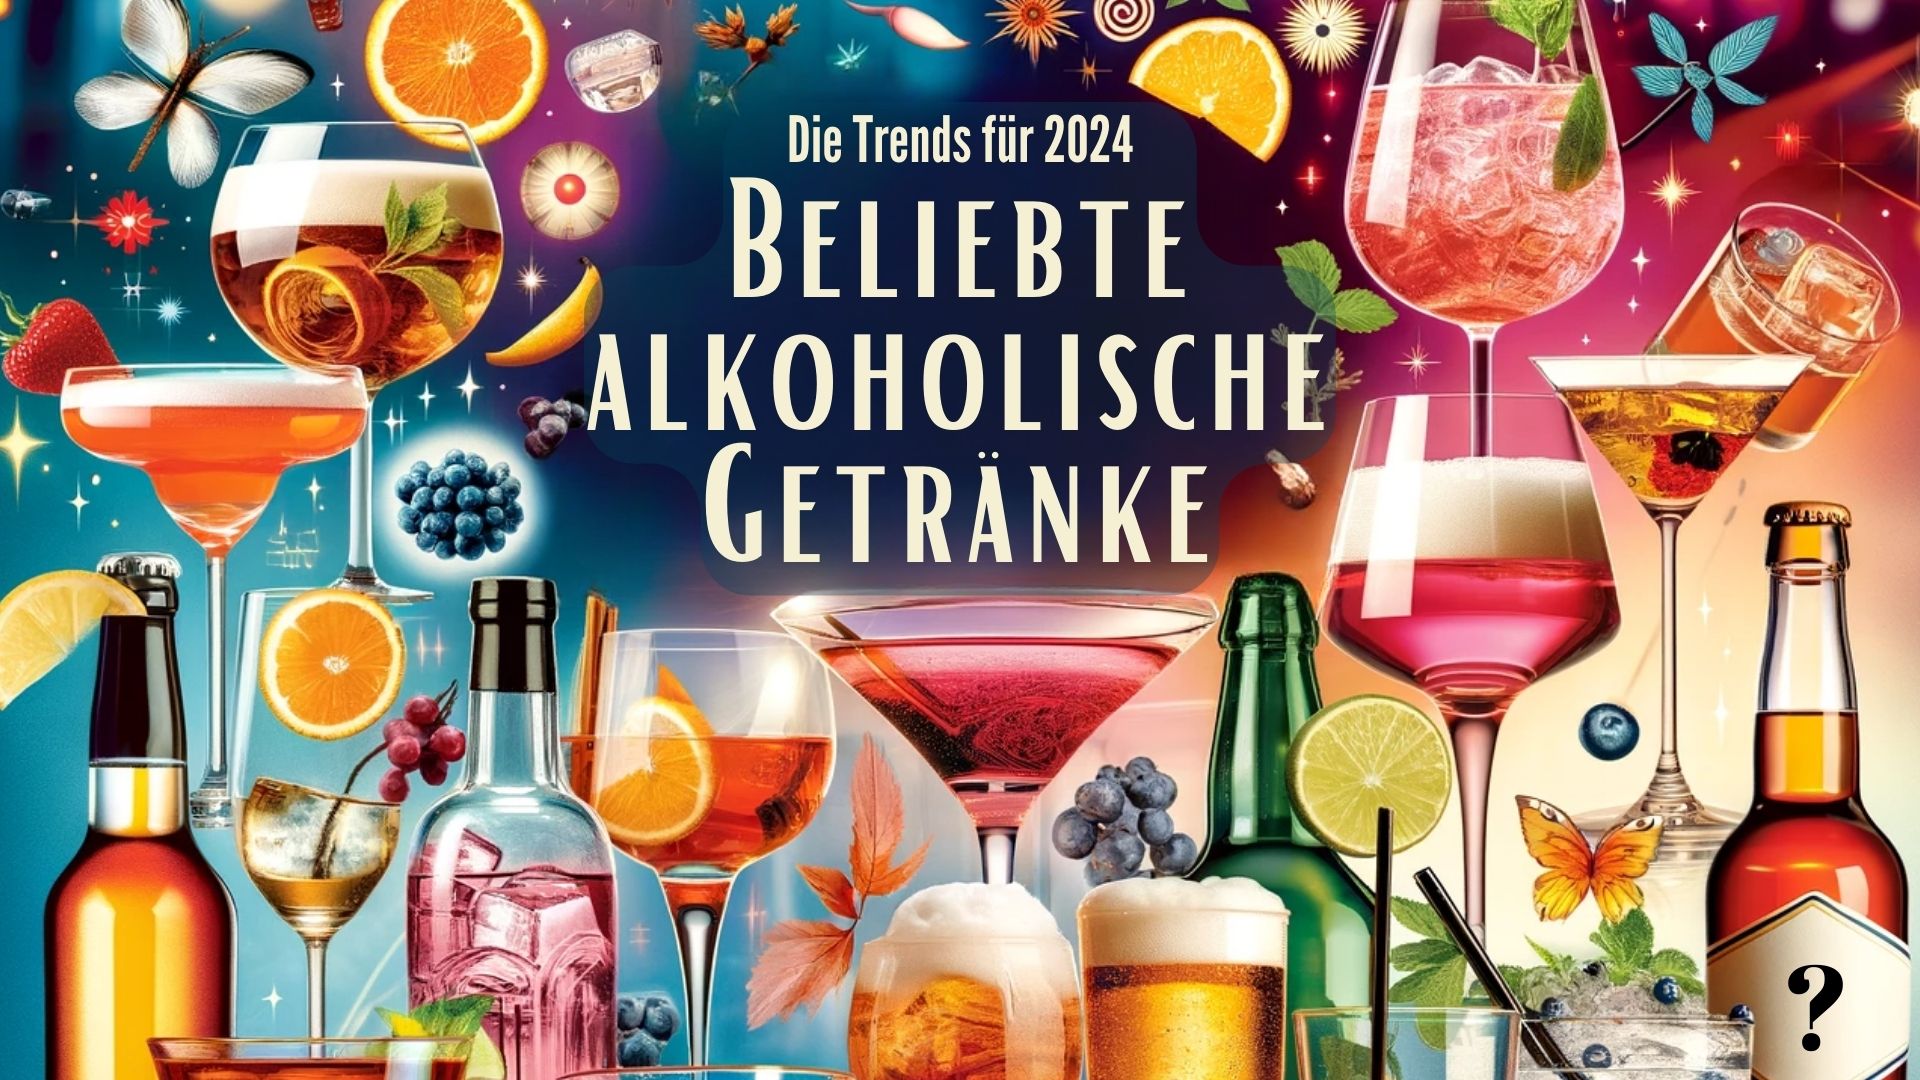 Beliebte alkoholische Getränke: Das sind die Trends für 2024